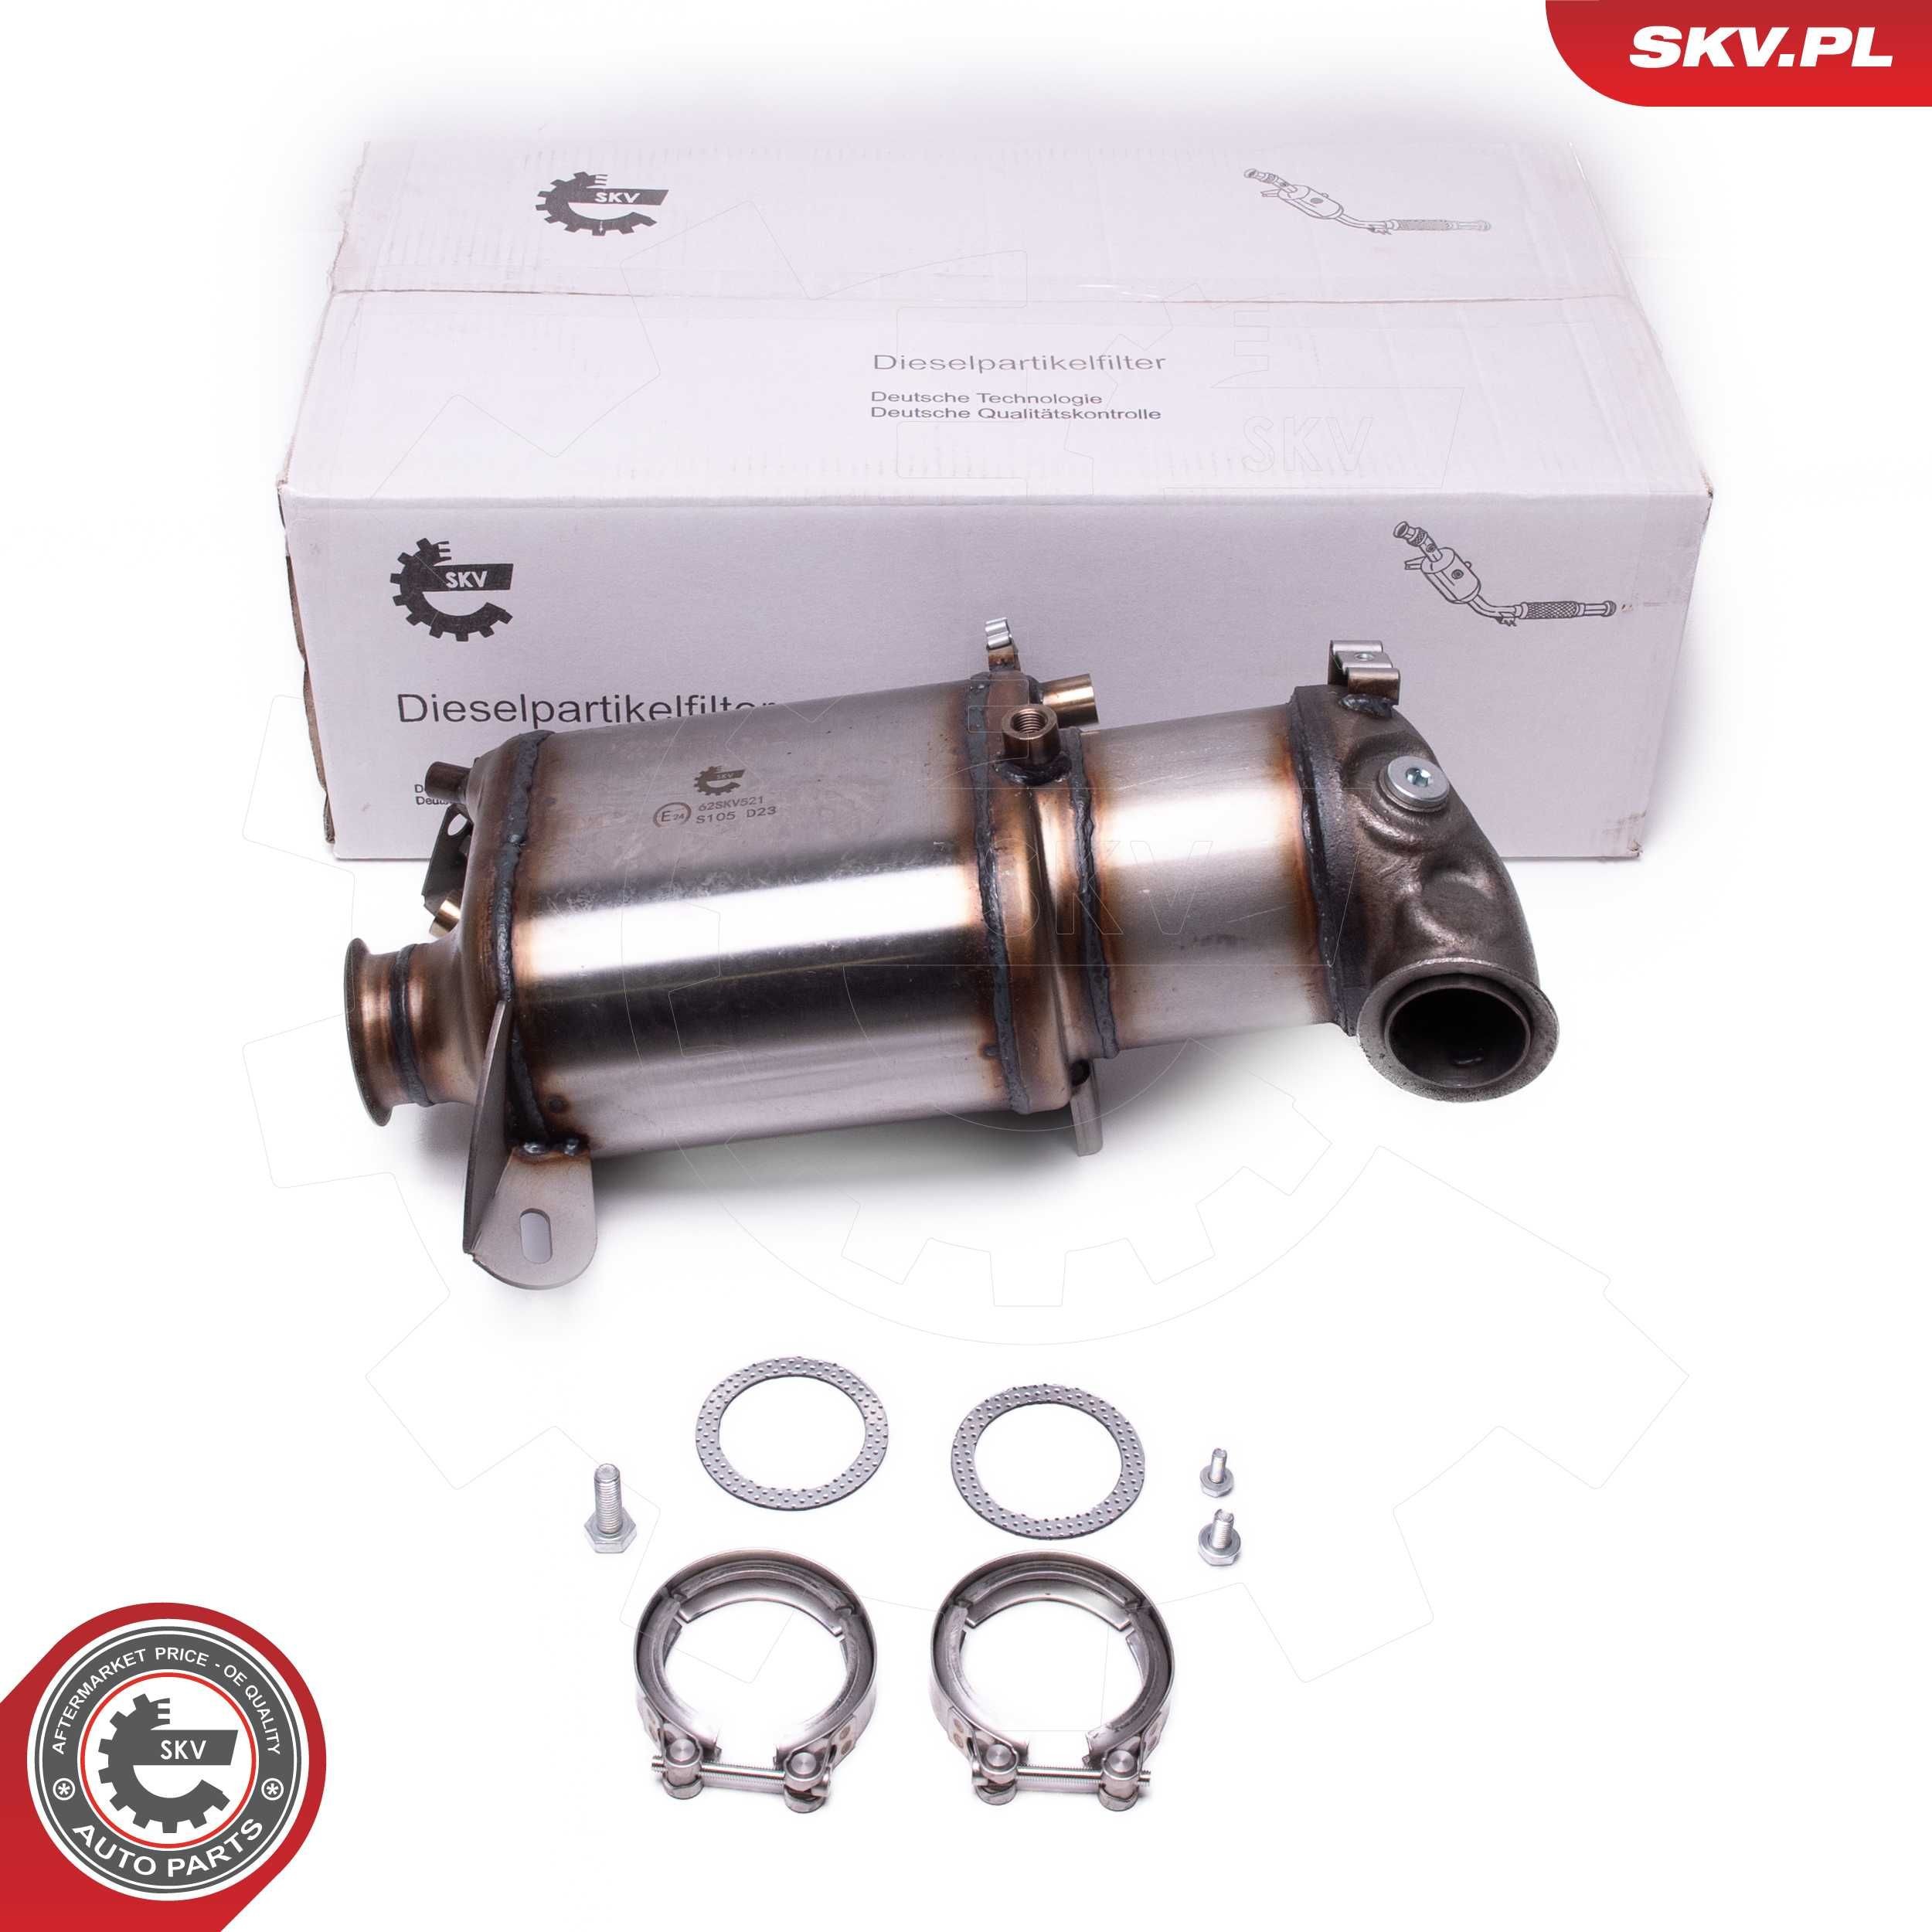 ESEN SKV 62SKV521 Diesel particulate filter 7E0254700HX